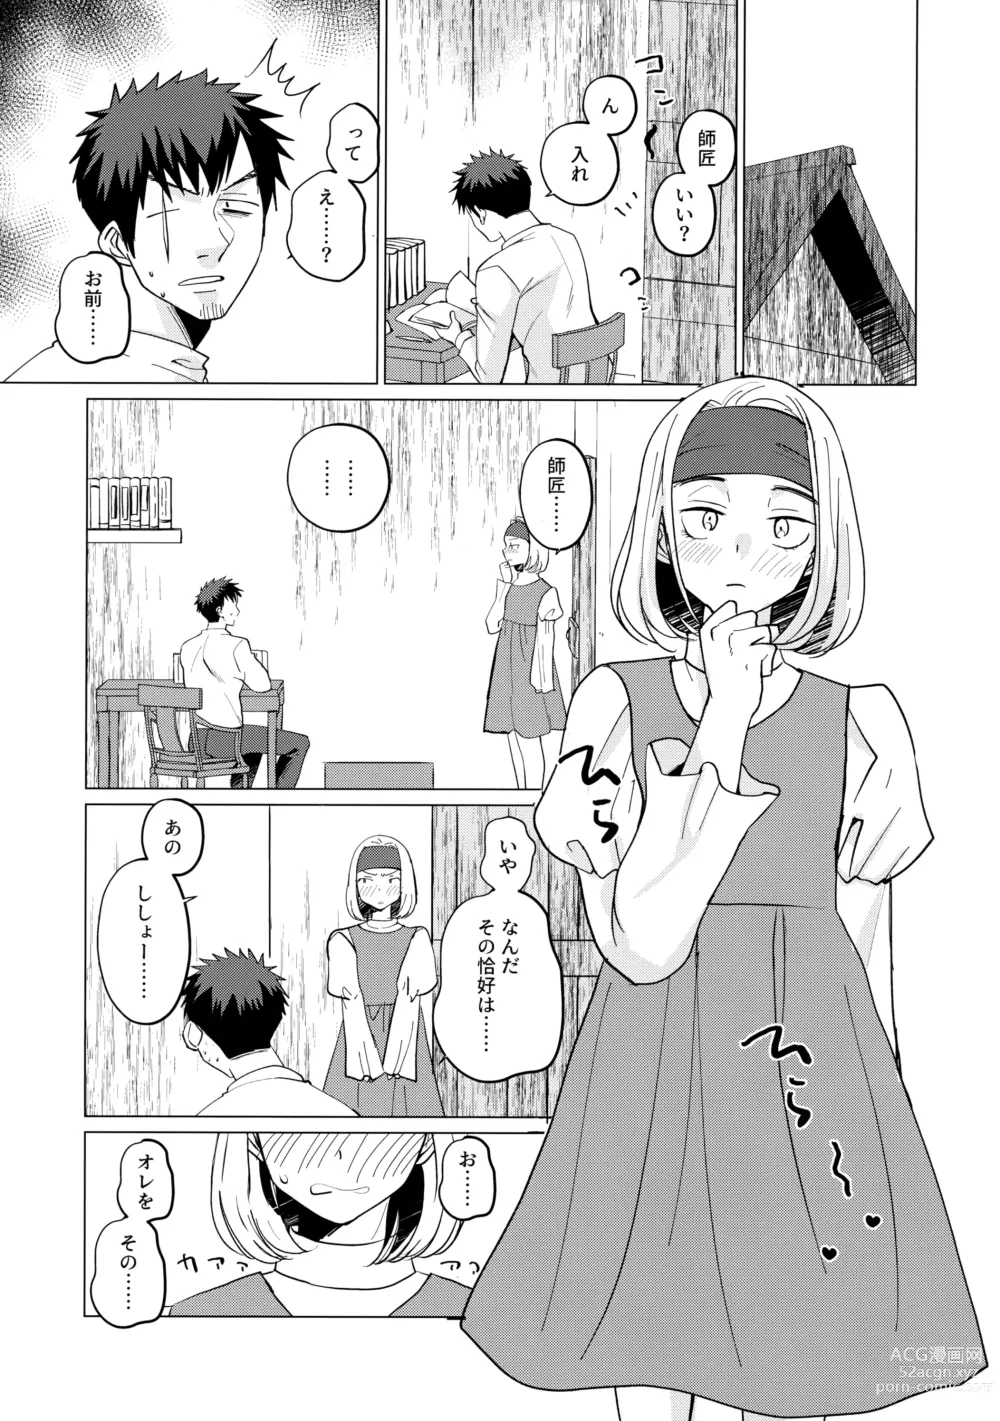 Page 6 of doujinshi Saikyou no Kenshi ni Tensei Shita kedo Kyouminai kara Deshi to Yamaoku Futarigurashi